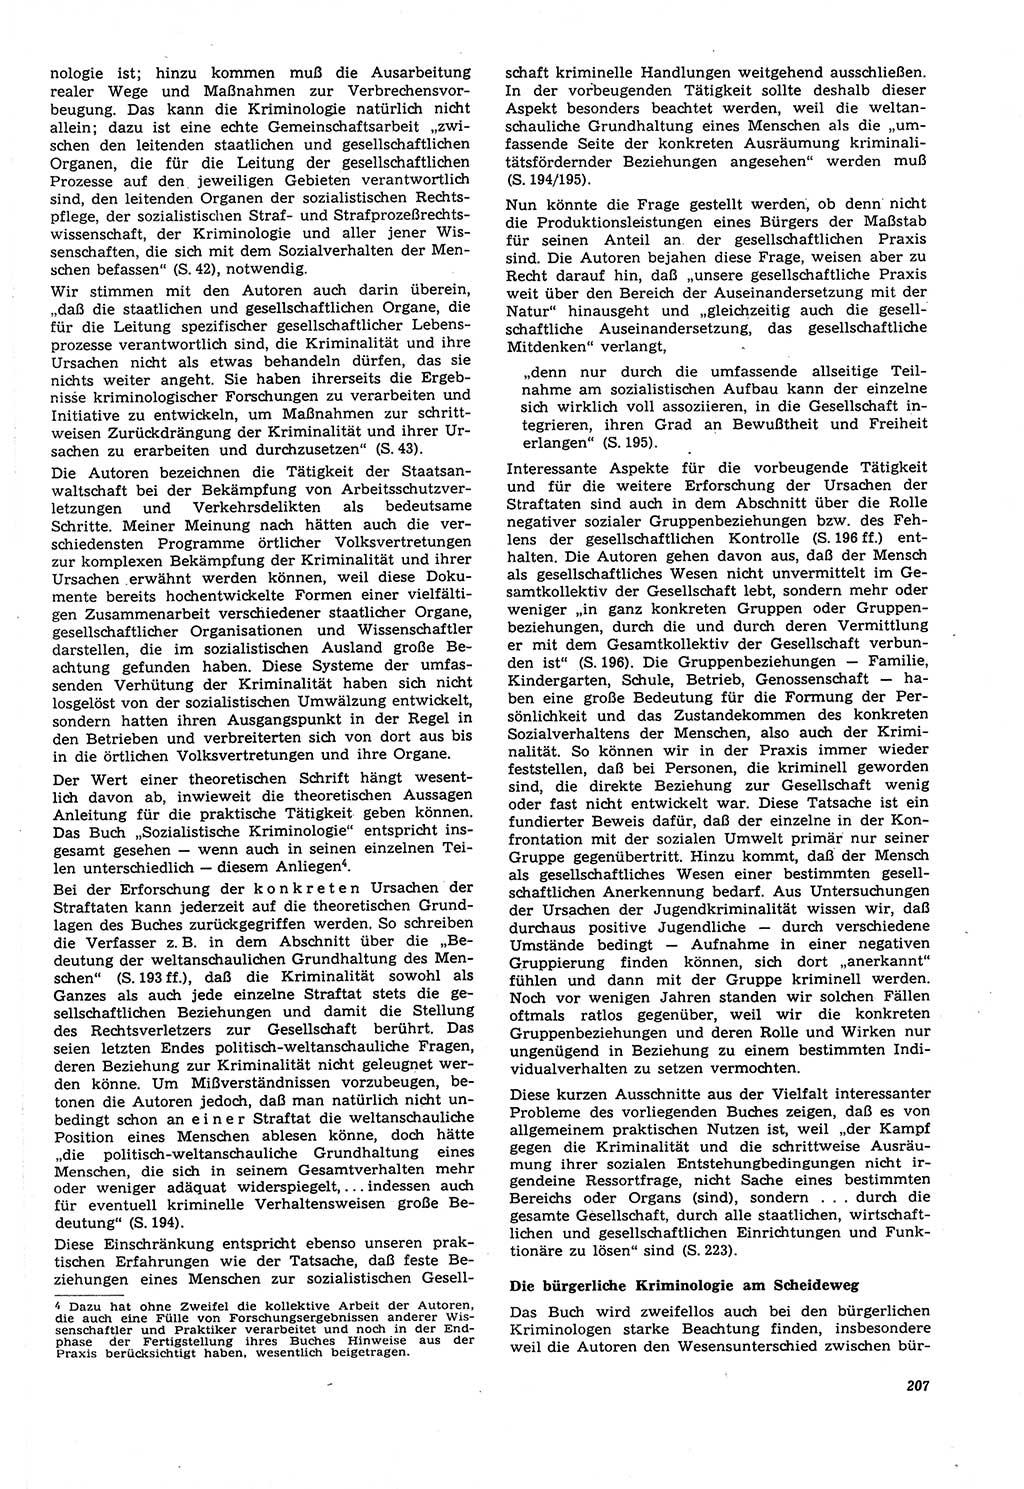 Neue Justiz (NJ), Zeitschrift für Recht und Rechtswissenschaft [Deutsche Demokratische Republik (DDR)], 21. Jahrgang 1967, Seite 207 (NJ DDR 1967, S. 207)